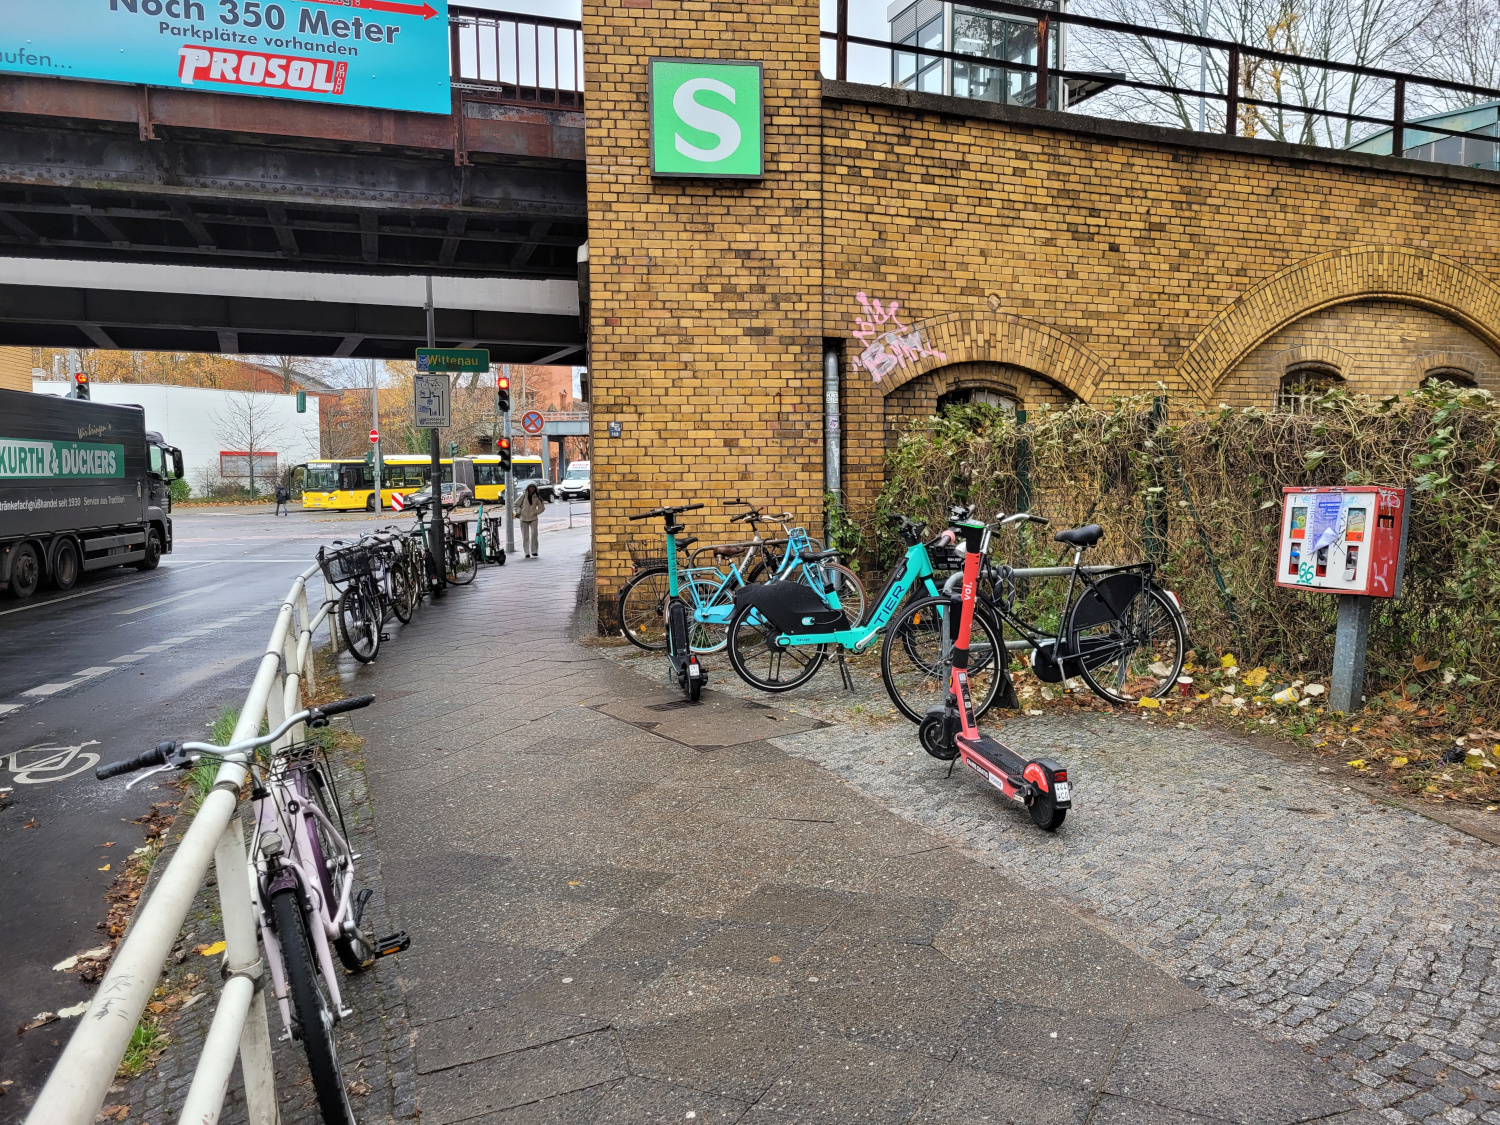 Wild abgestellte E-Roller und Fahrräder am Geländer am S-Bahnhof